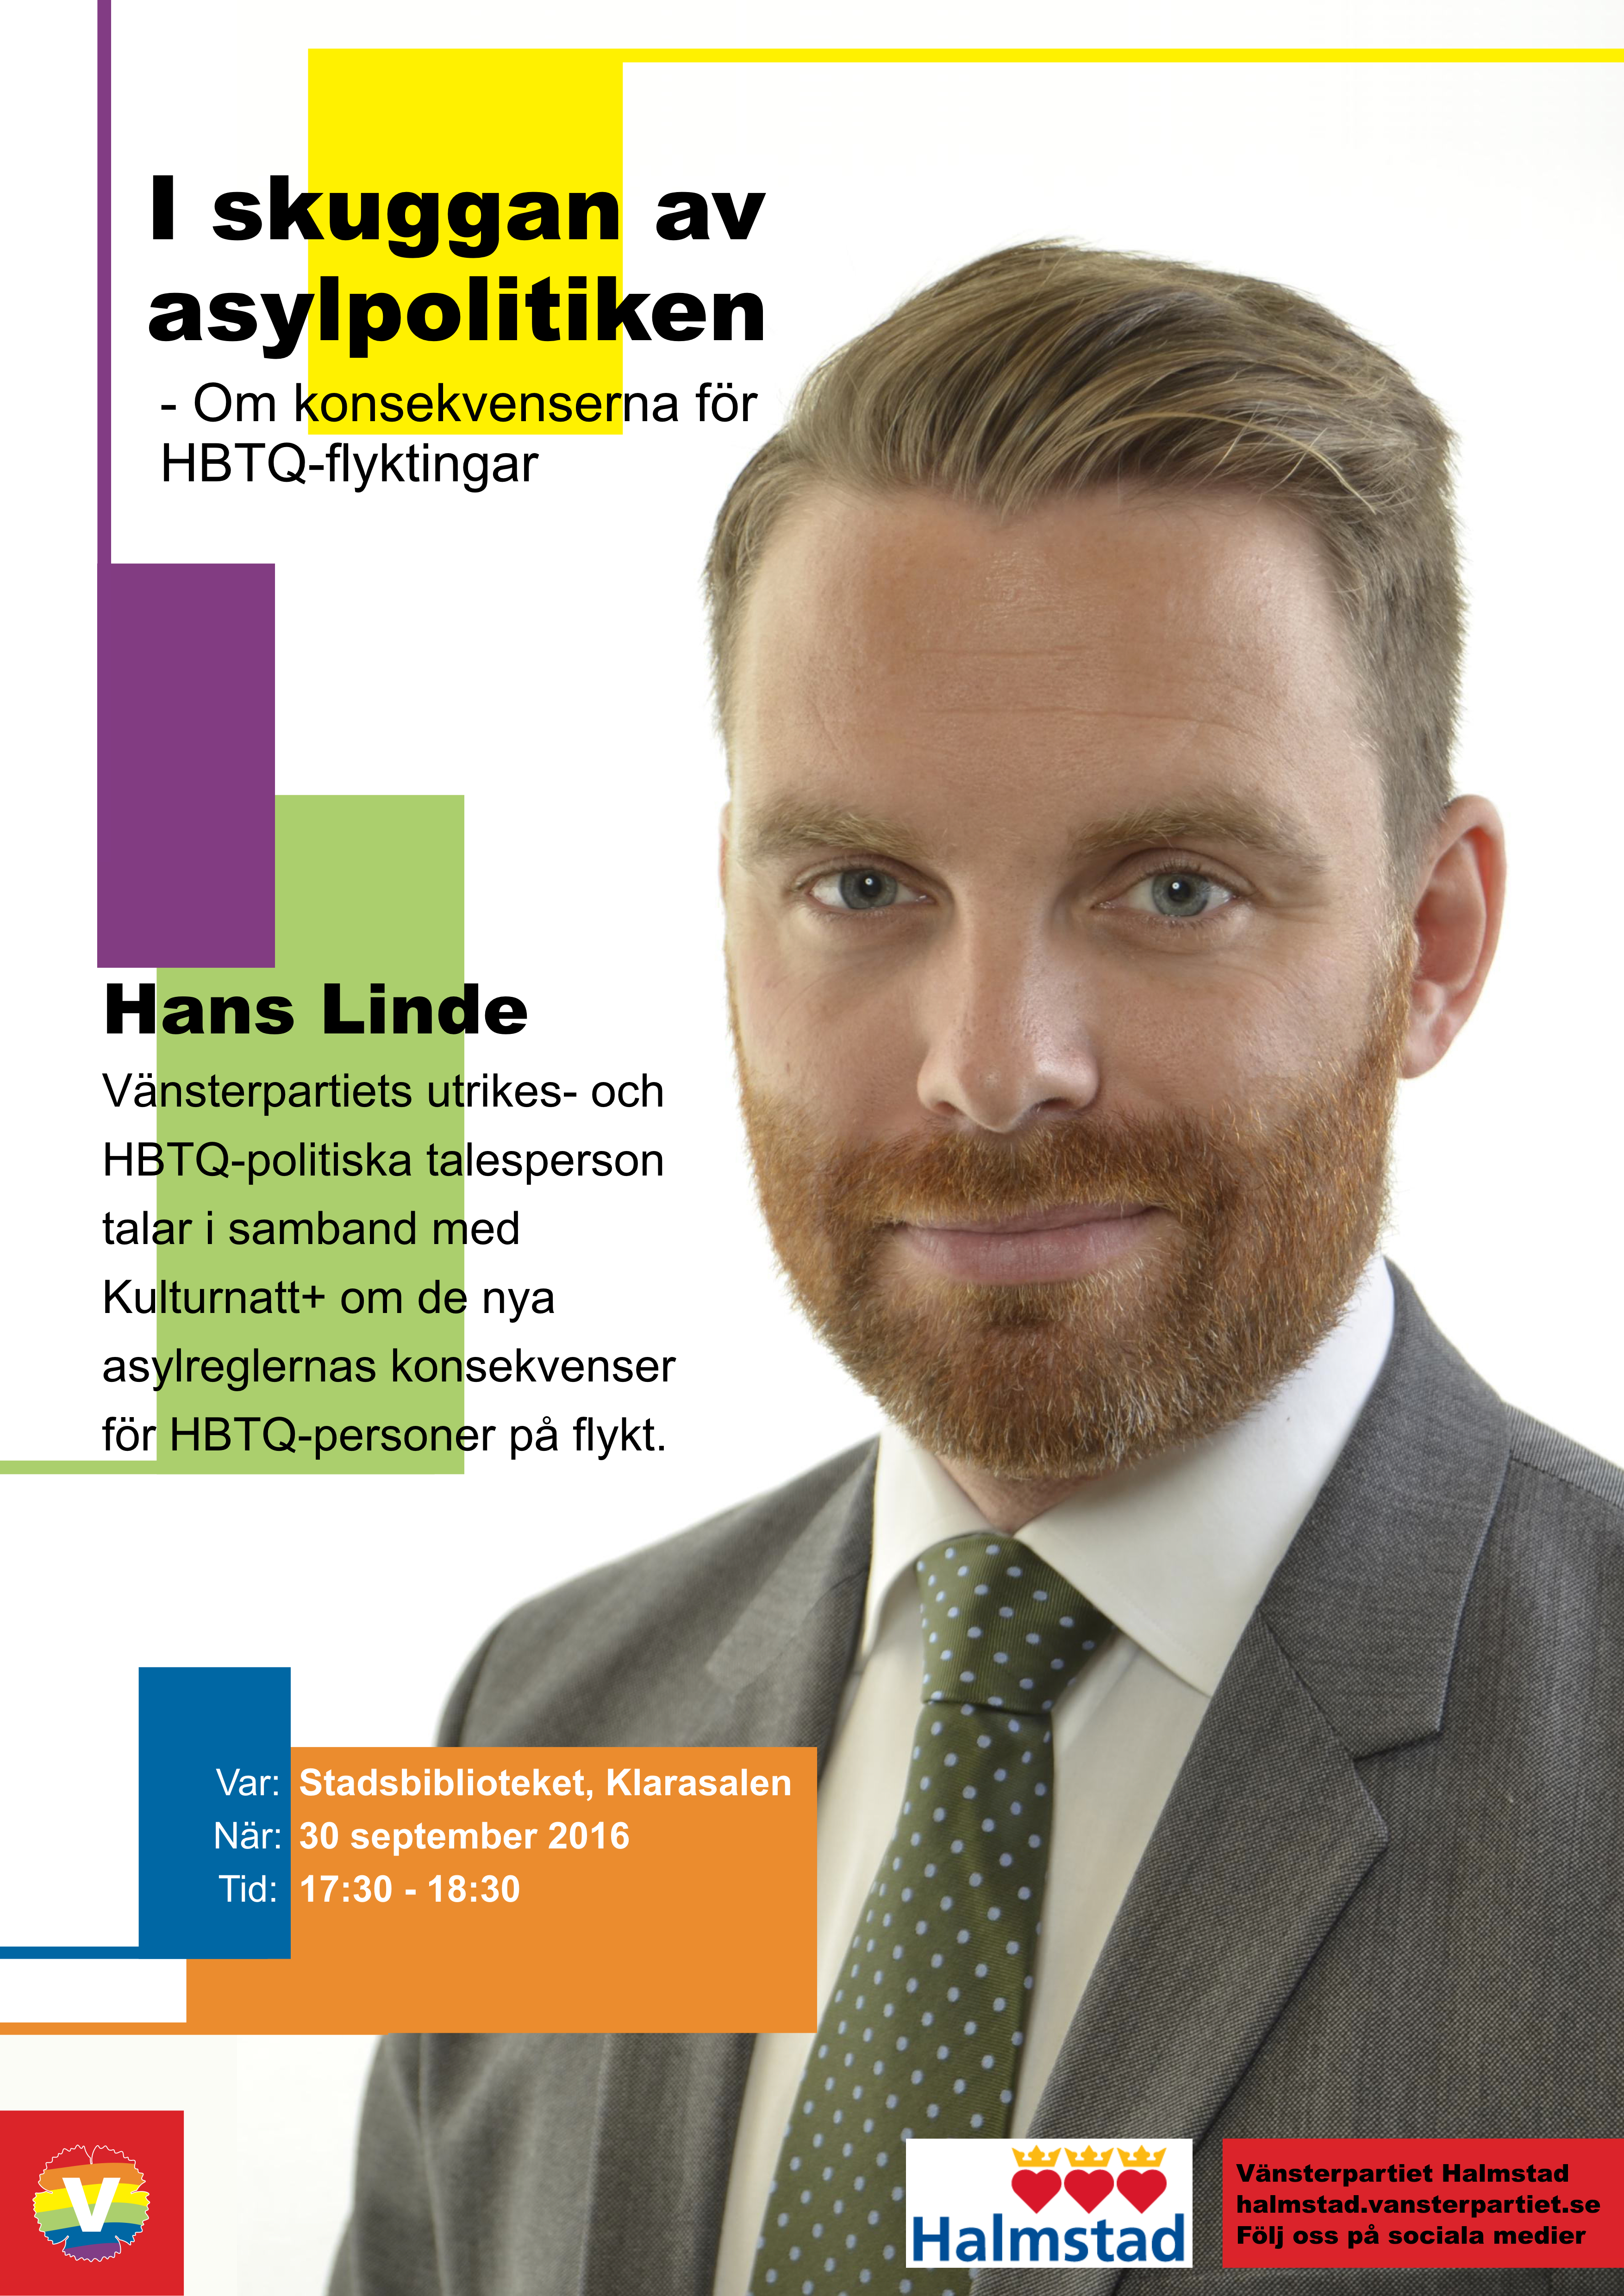 Hans Linde + information om när och var han talar i Halmstad